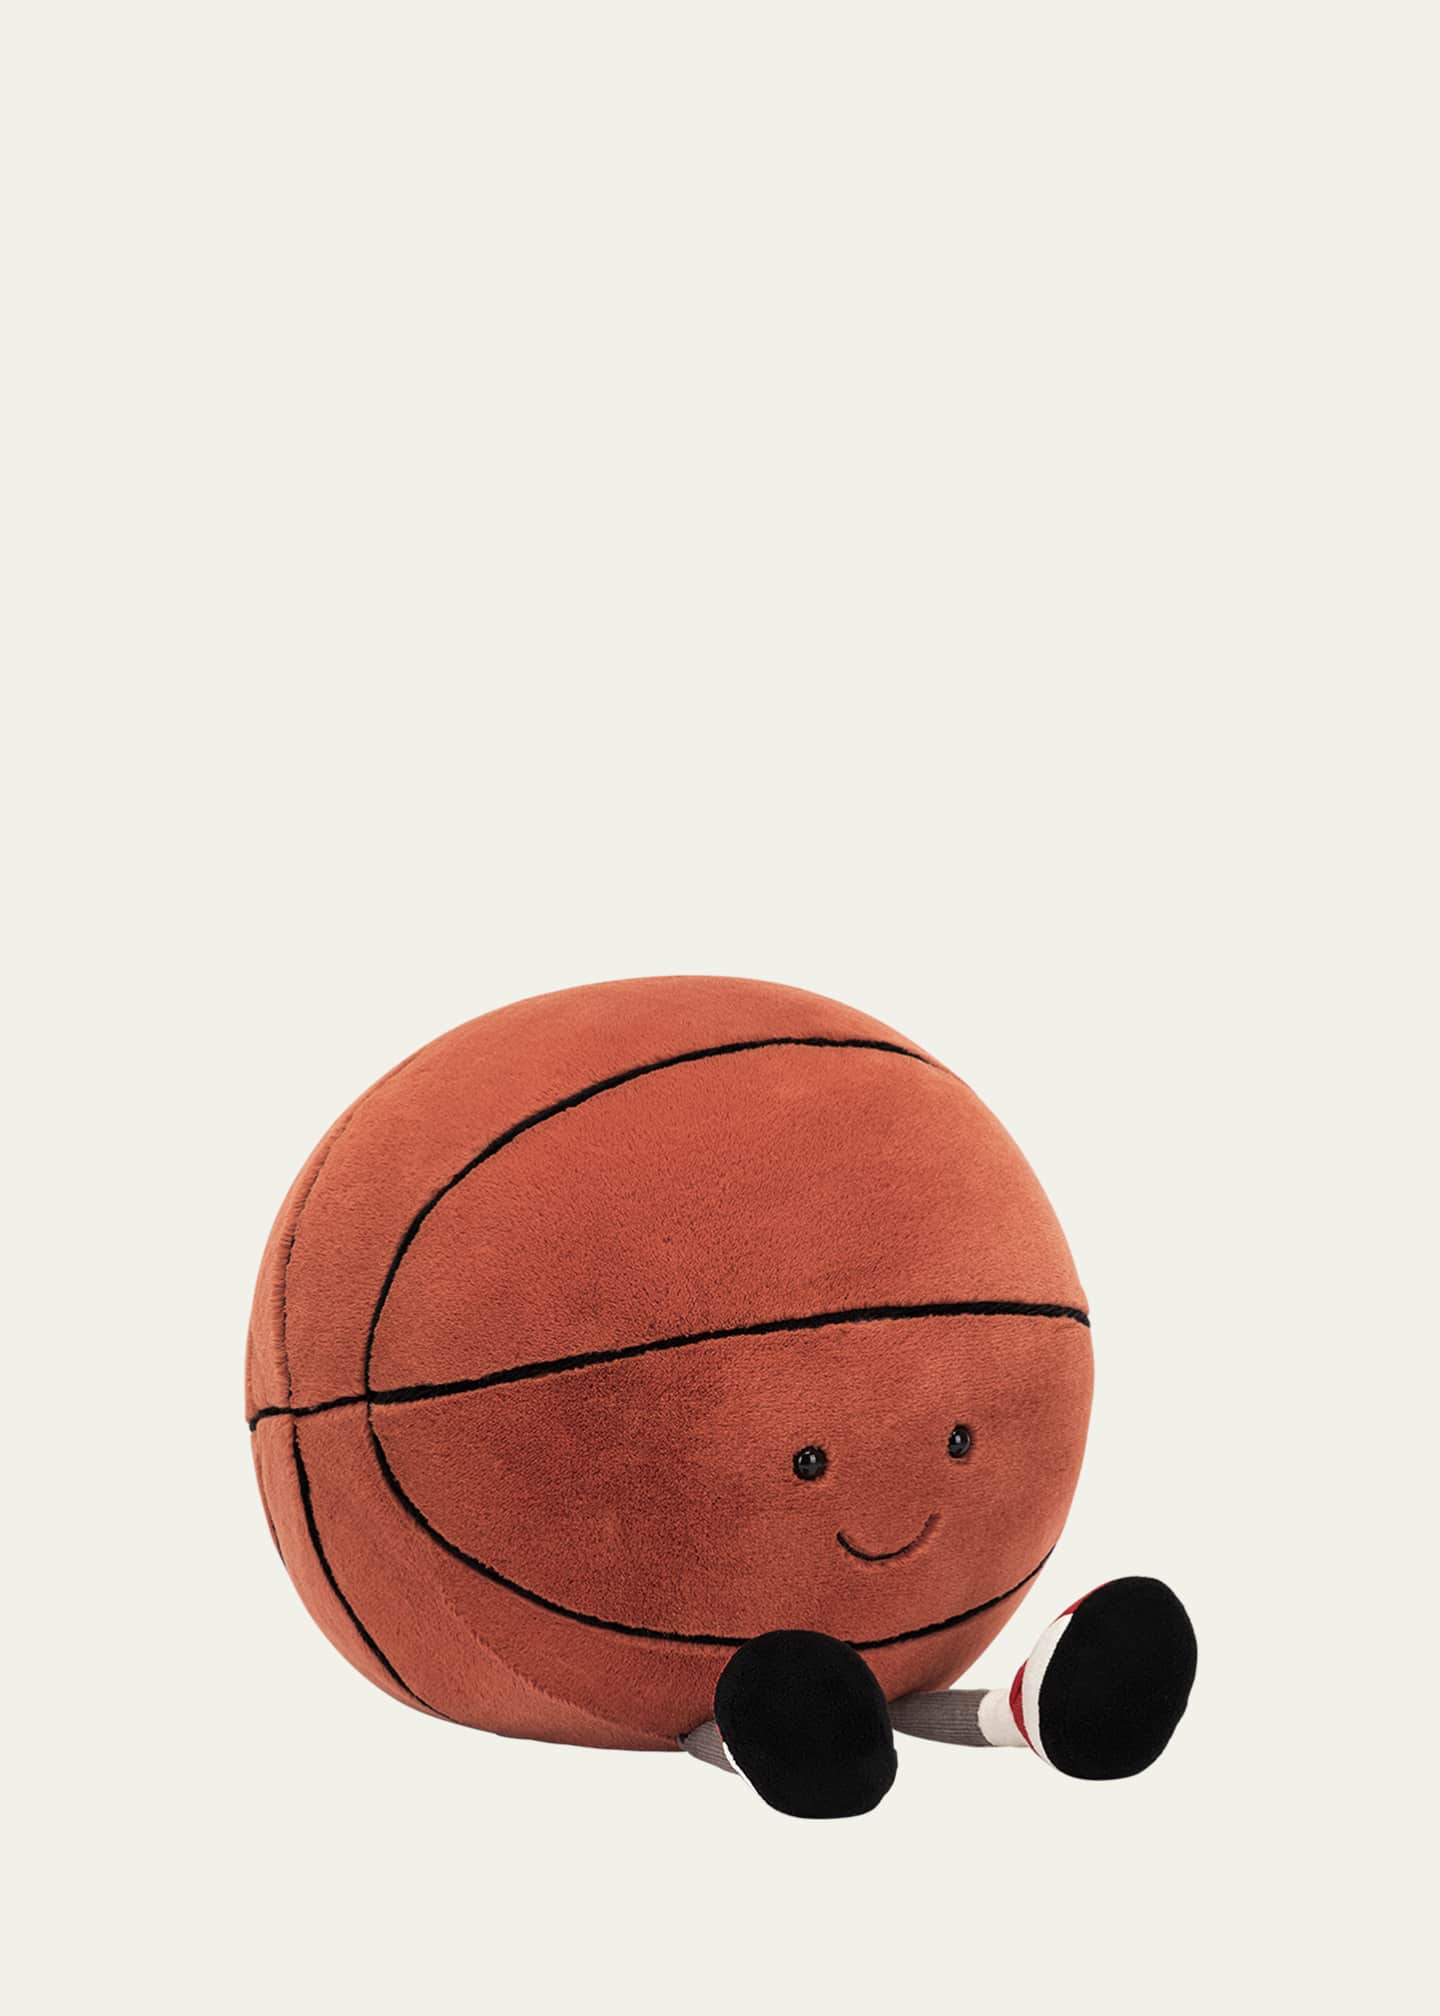 Jellycat Amuseable Basketball Stuffed Toy - Bergdorf Goodman